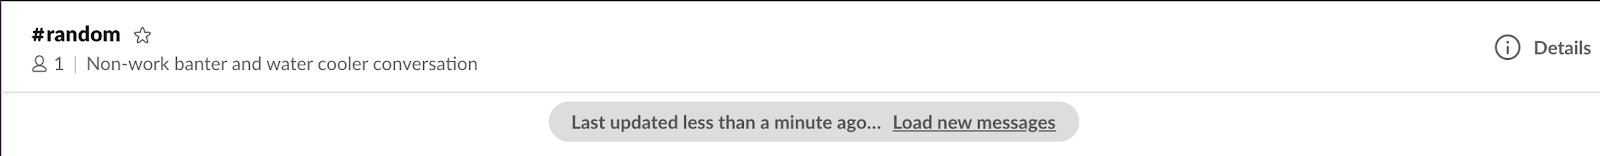 Канал в Slack с сообщением «Последнее обновление — менее минуты назад… Загрузить новые сообщения»